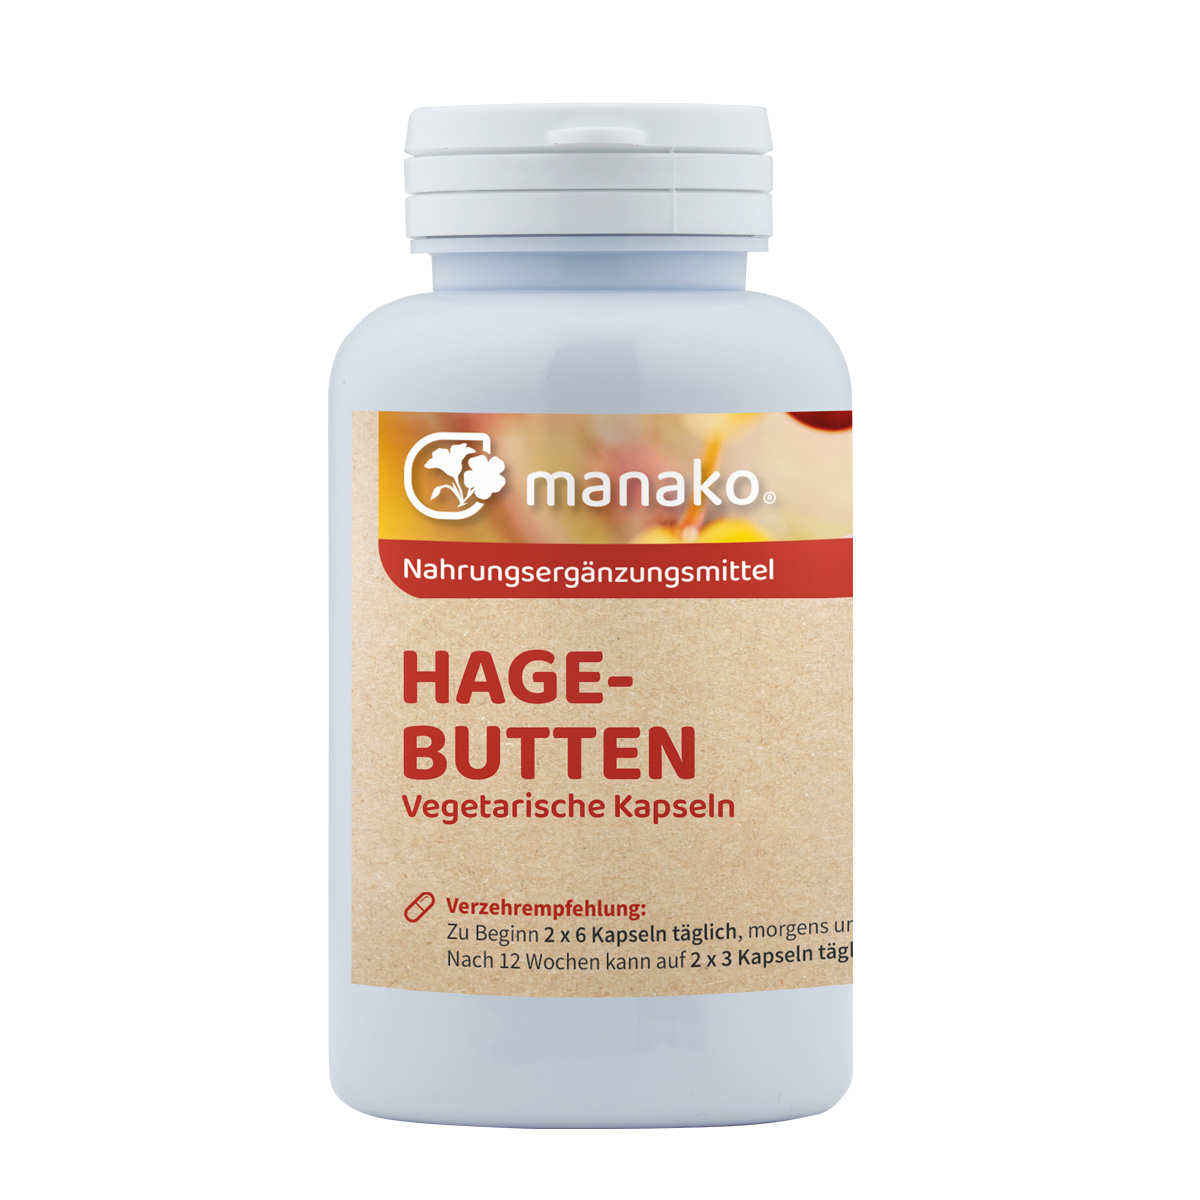 manako Hagebutten vegetarische Kapseln, 120 Stück a 500 mg, Dose a 72 g